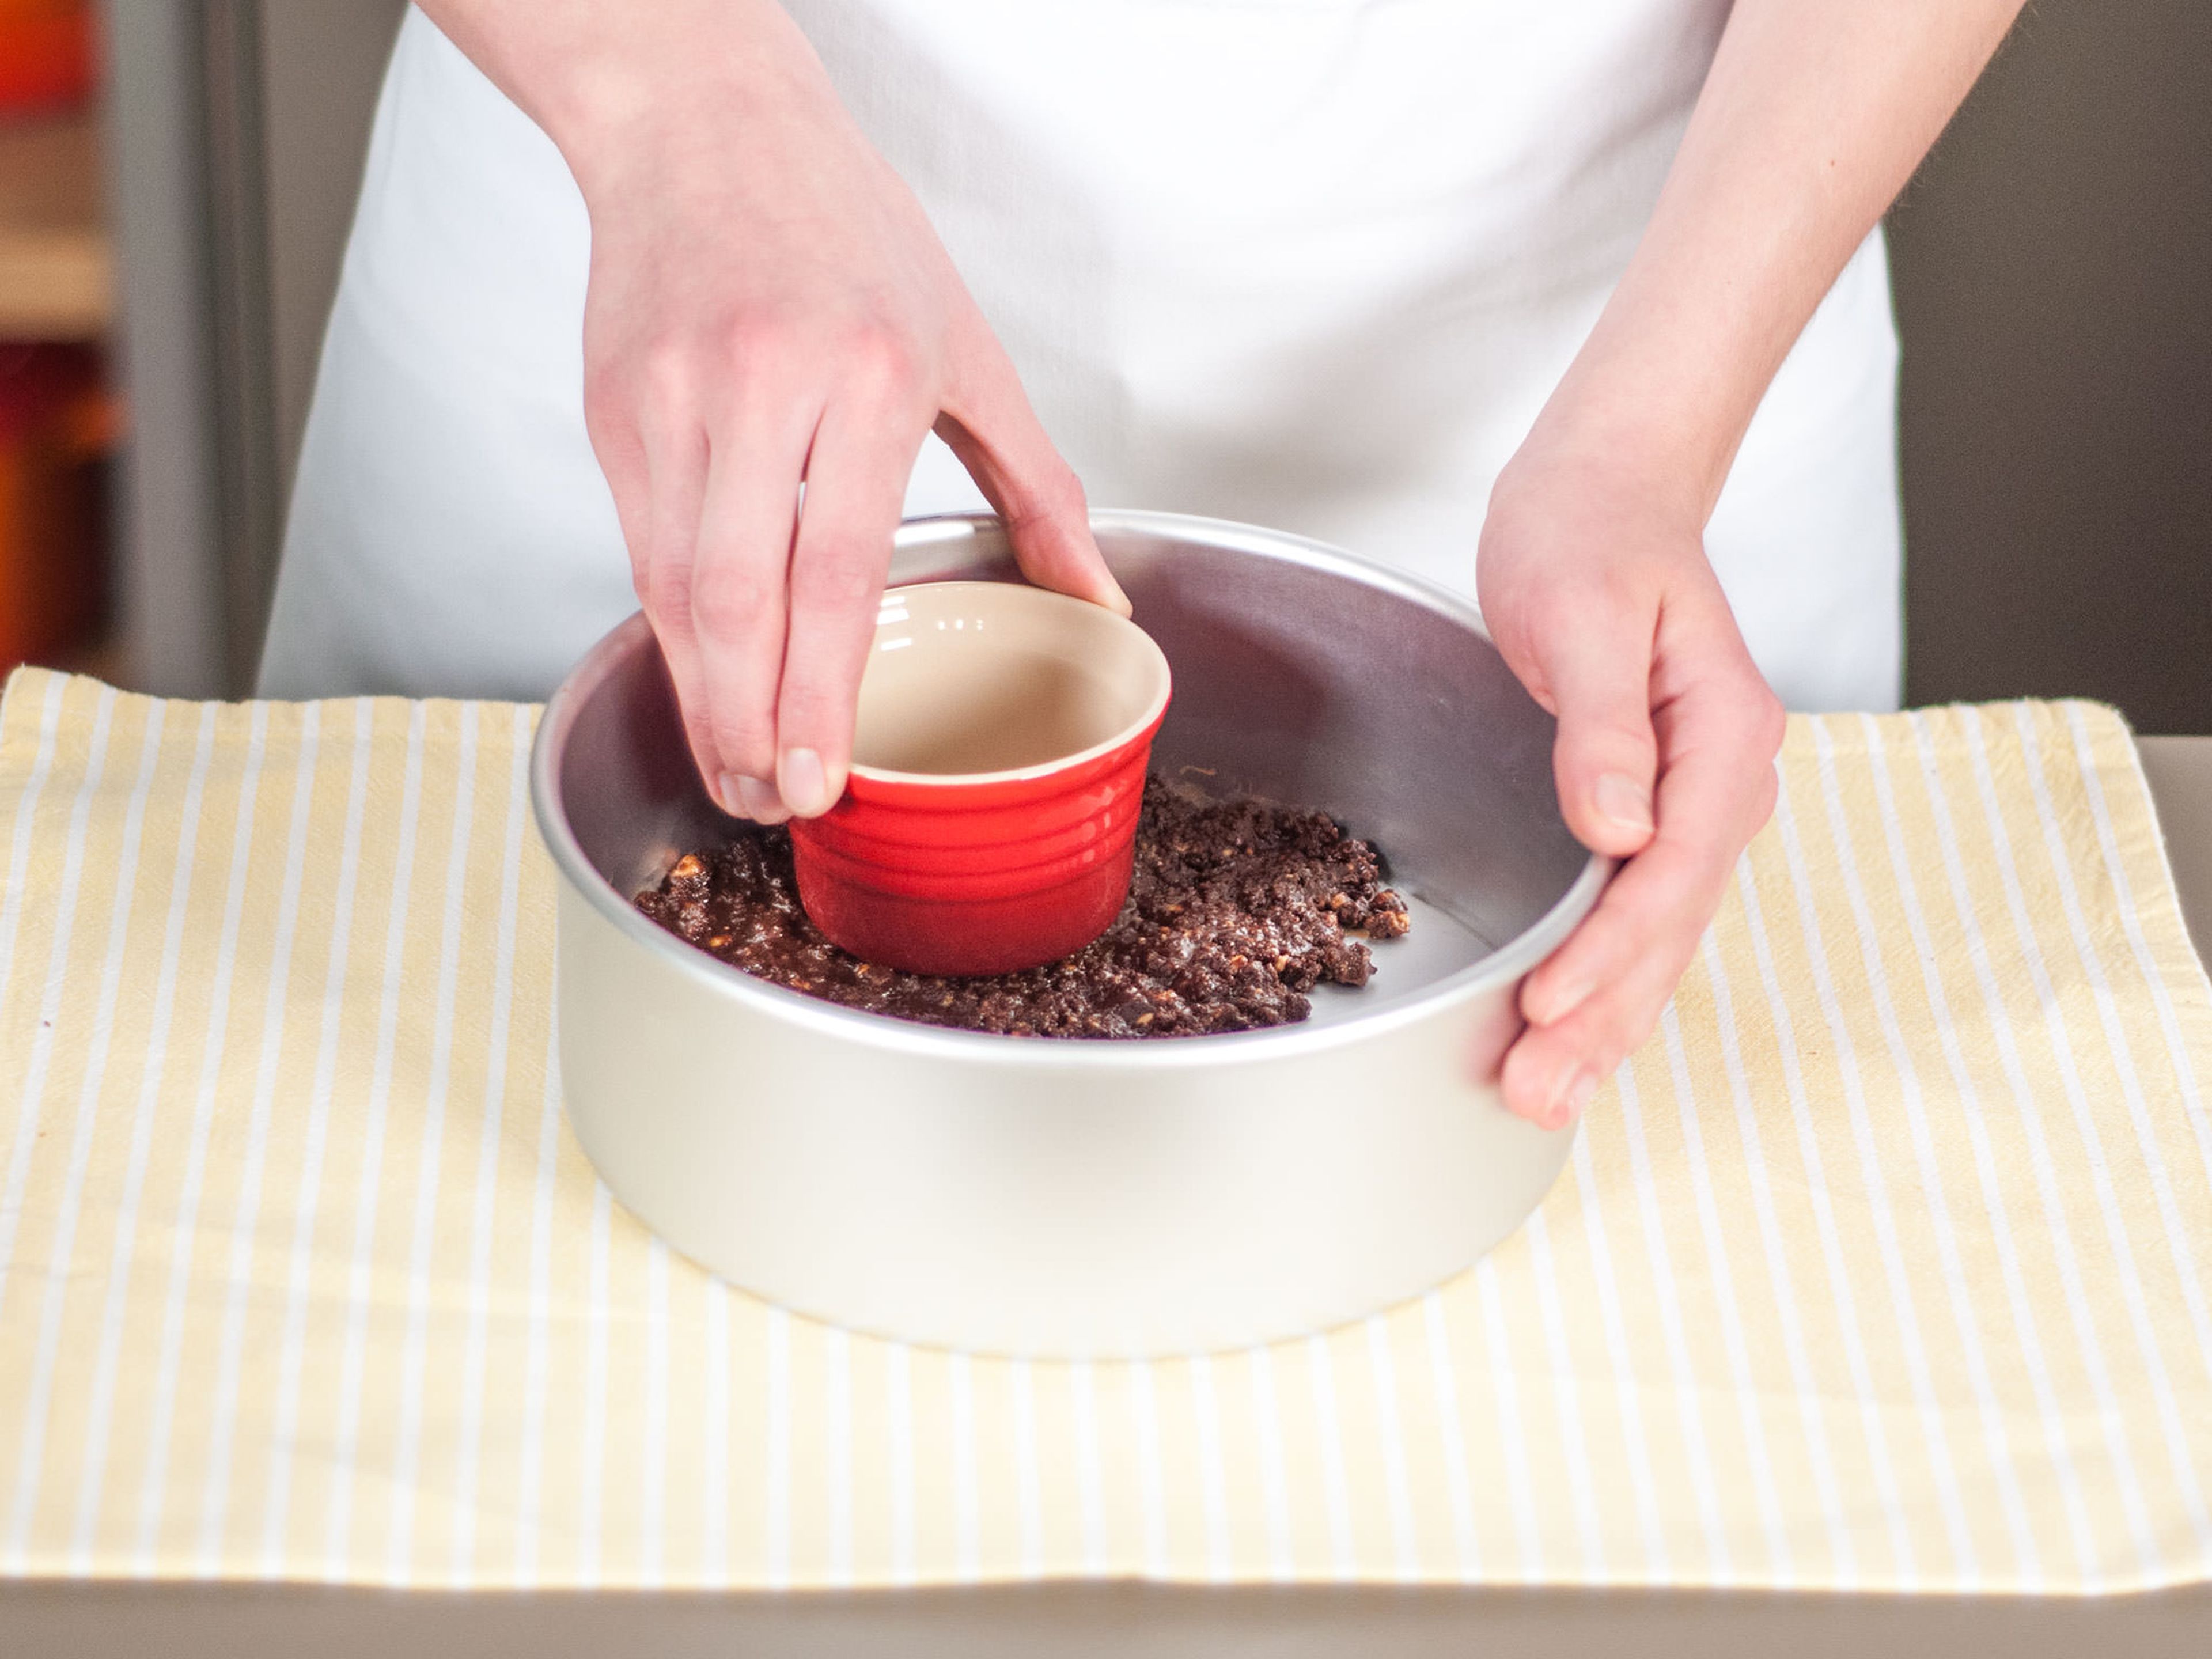 Kekskrümelmischung in eine runde Backform geben und sorgfältig an den Boden der Backform drücken.